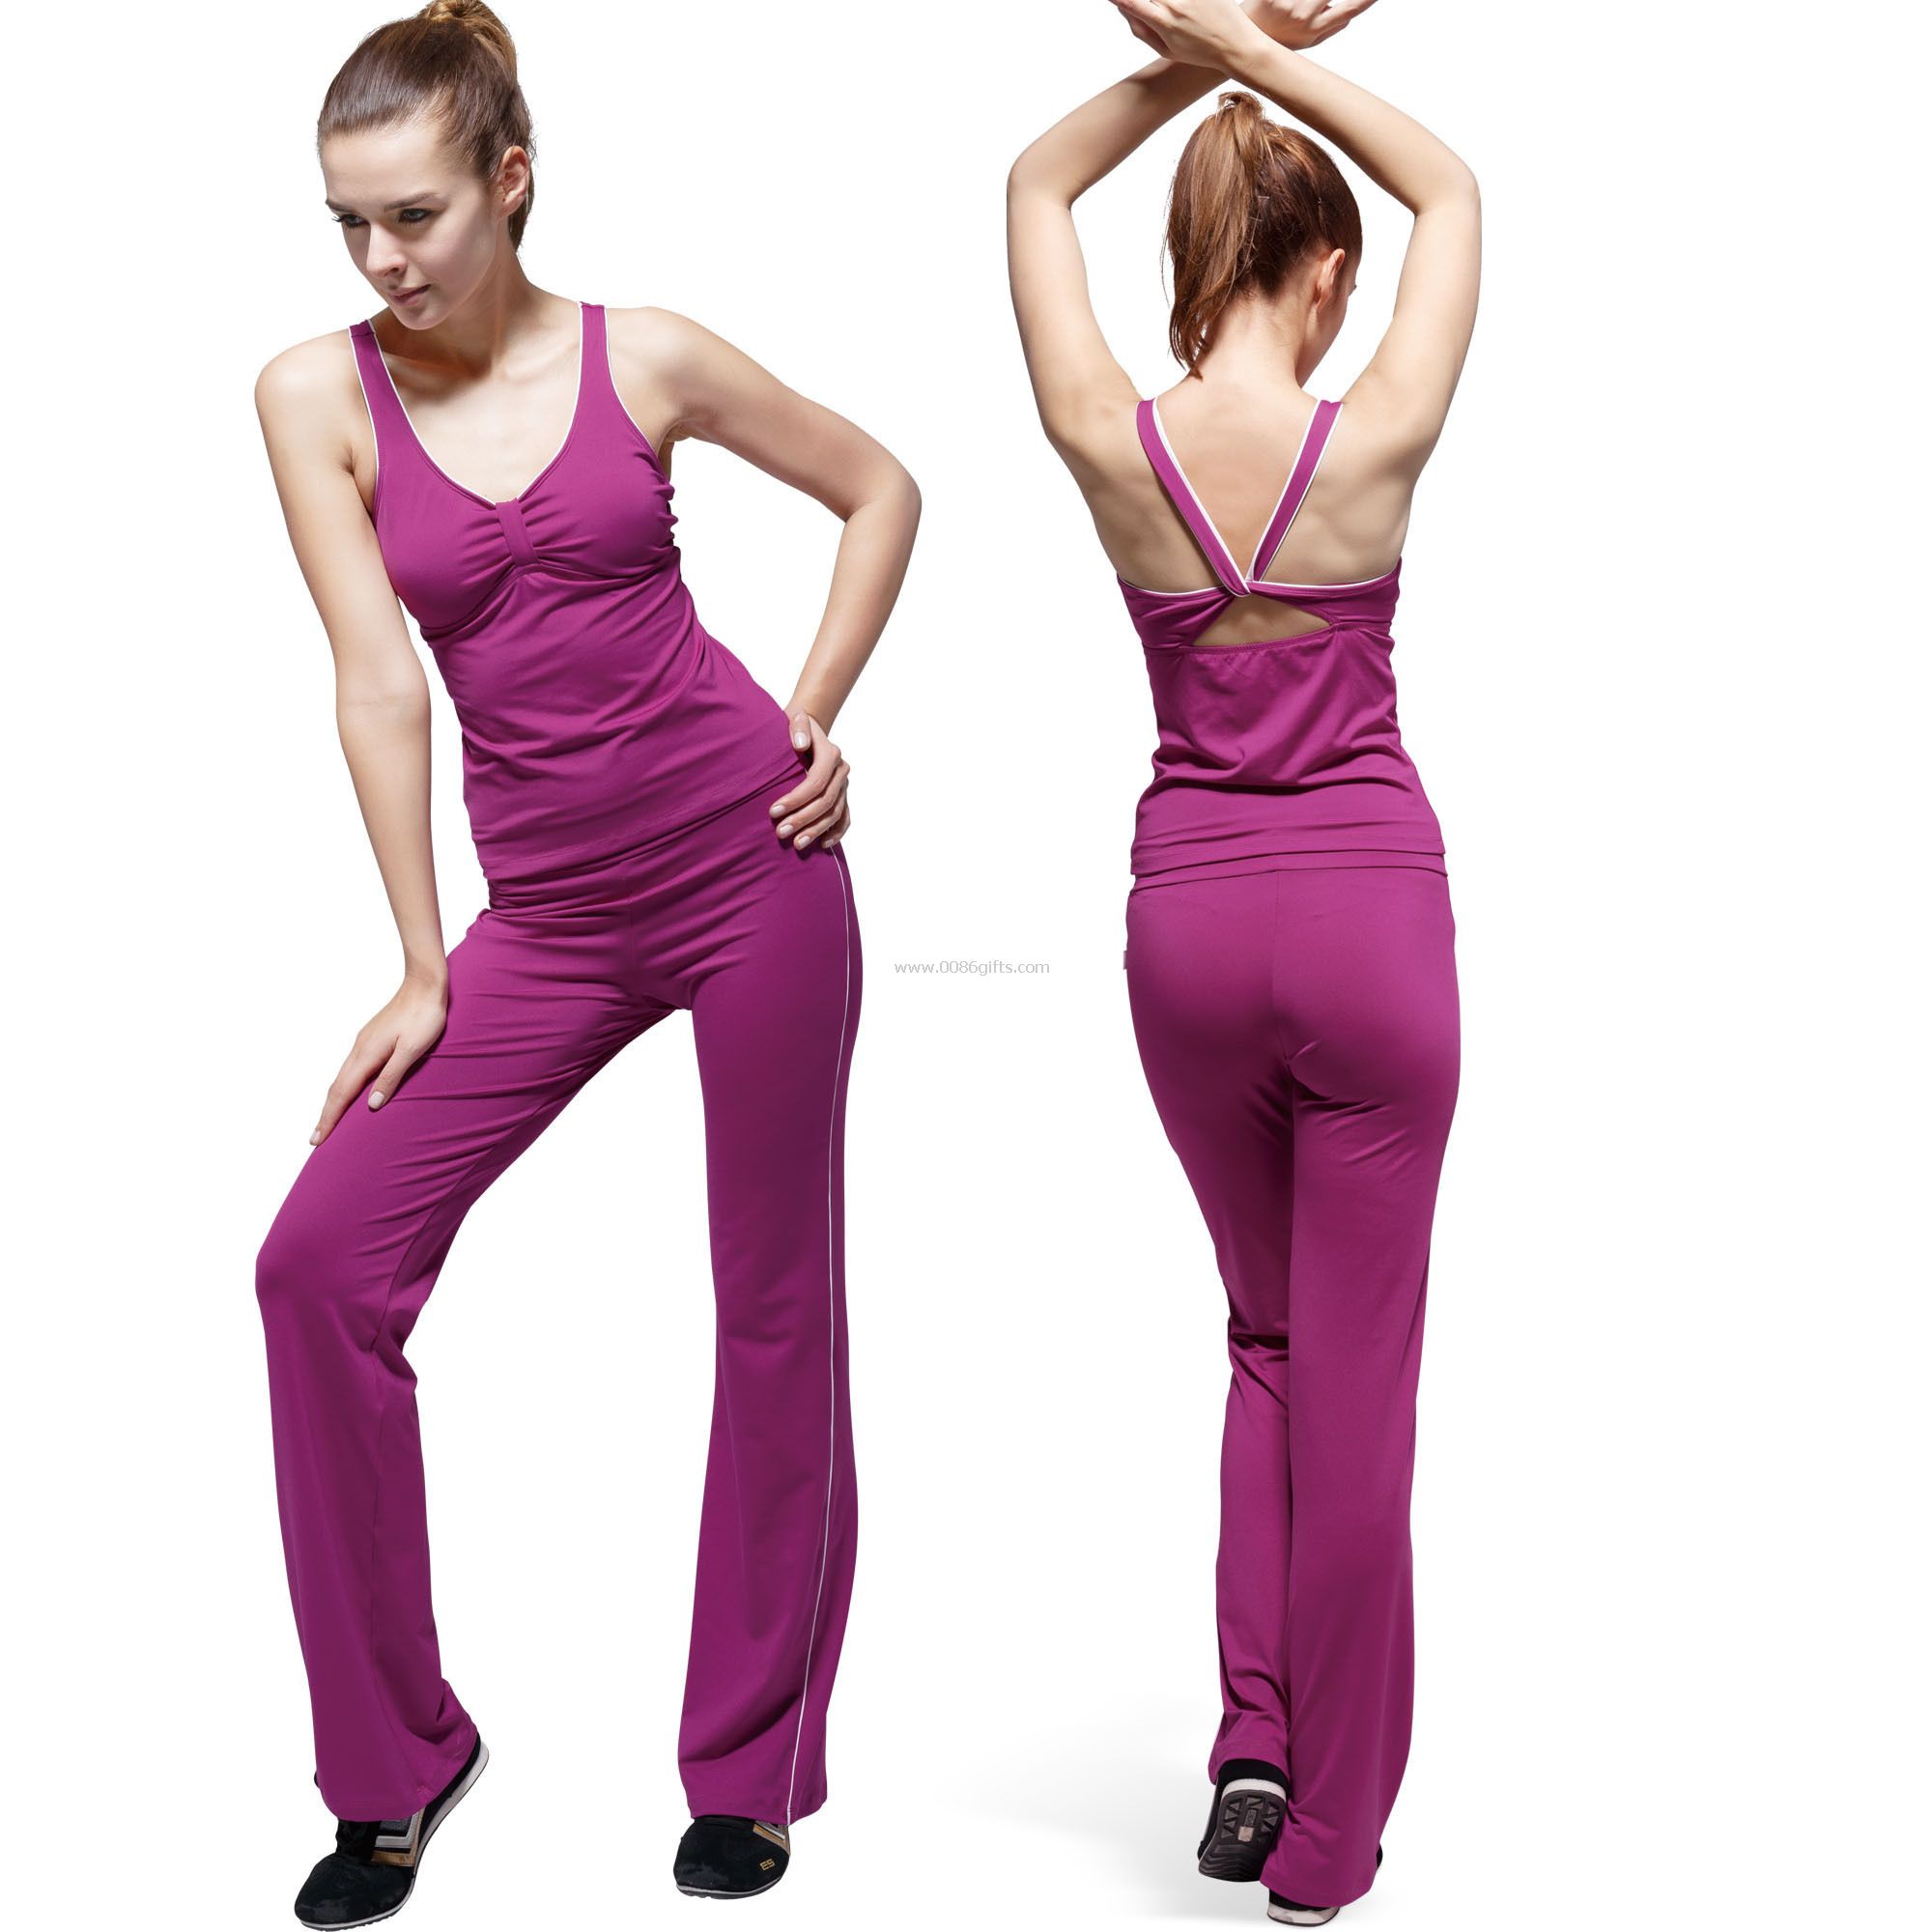 Spandex / cotone Womens Fitness Wear stretto traspirante con profondo scollo a v Design